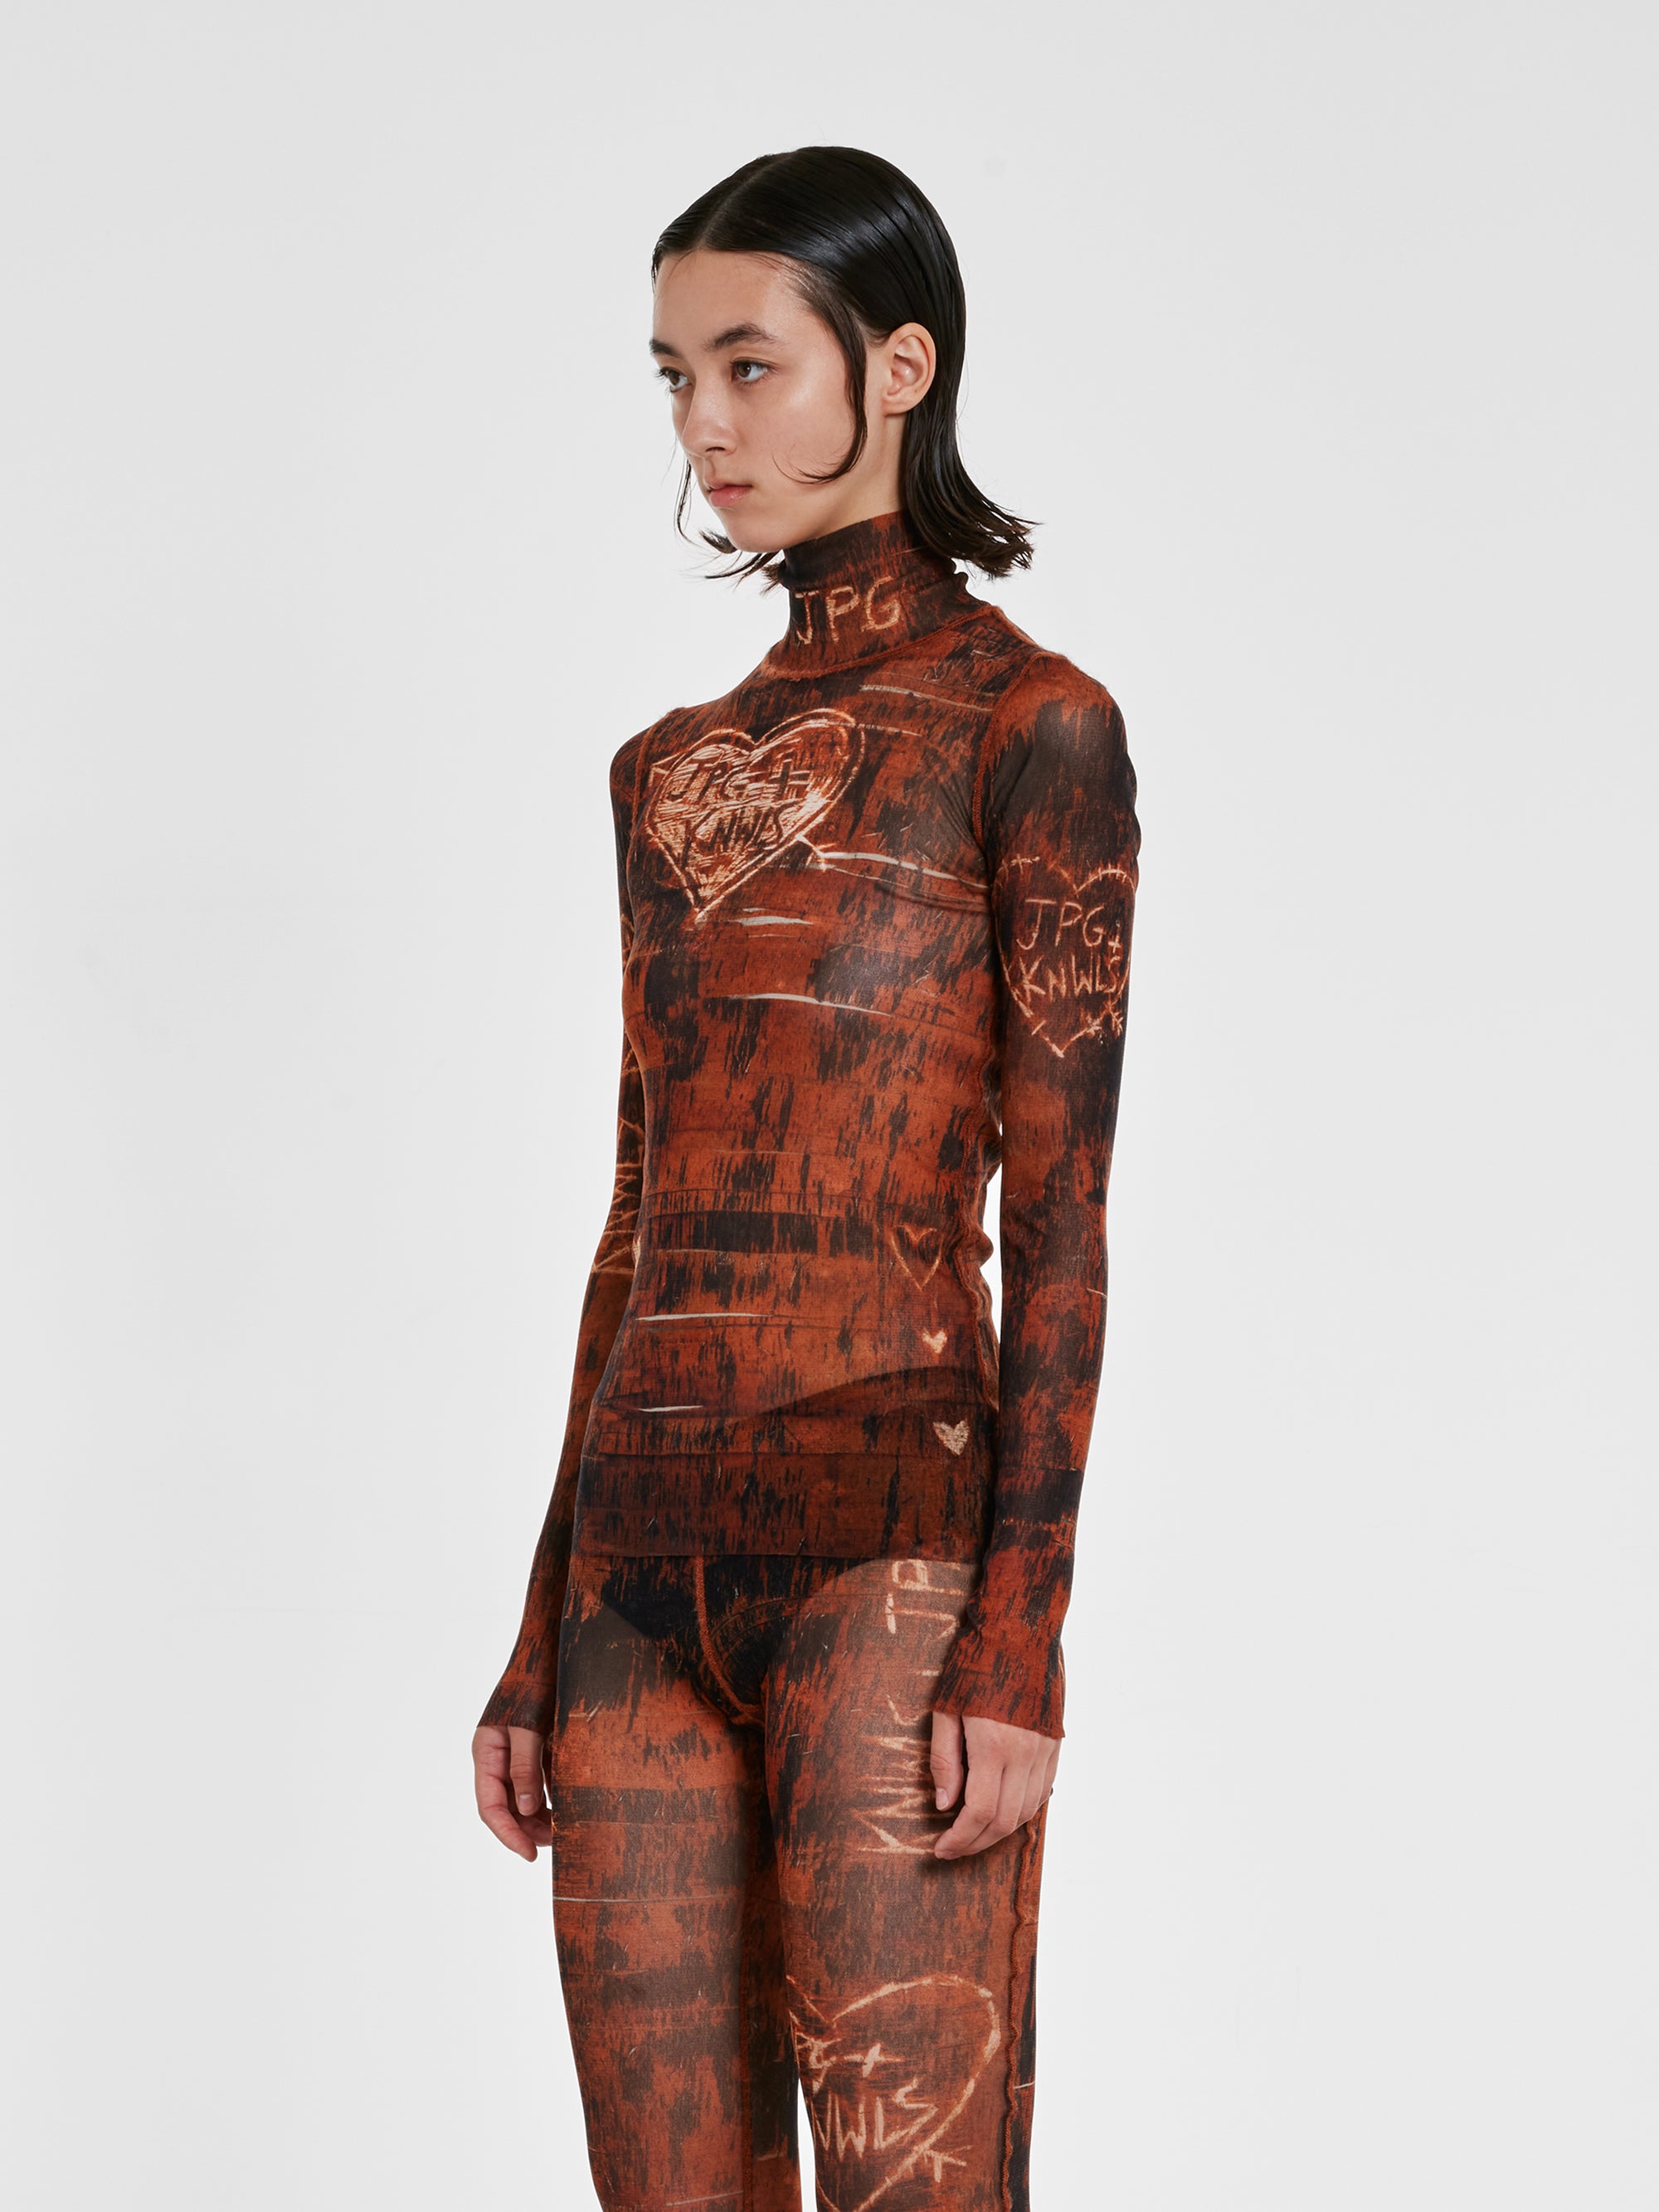 Jean Paul Gaultier - KNWLS Women’s Scratch Wood Long Sleeve Printed Top - (Brown/Ecru) view 3